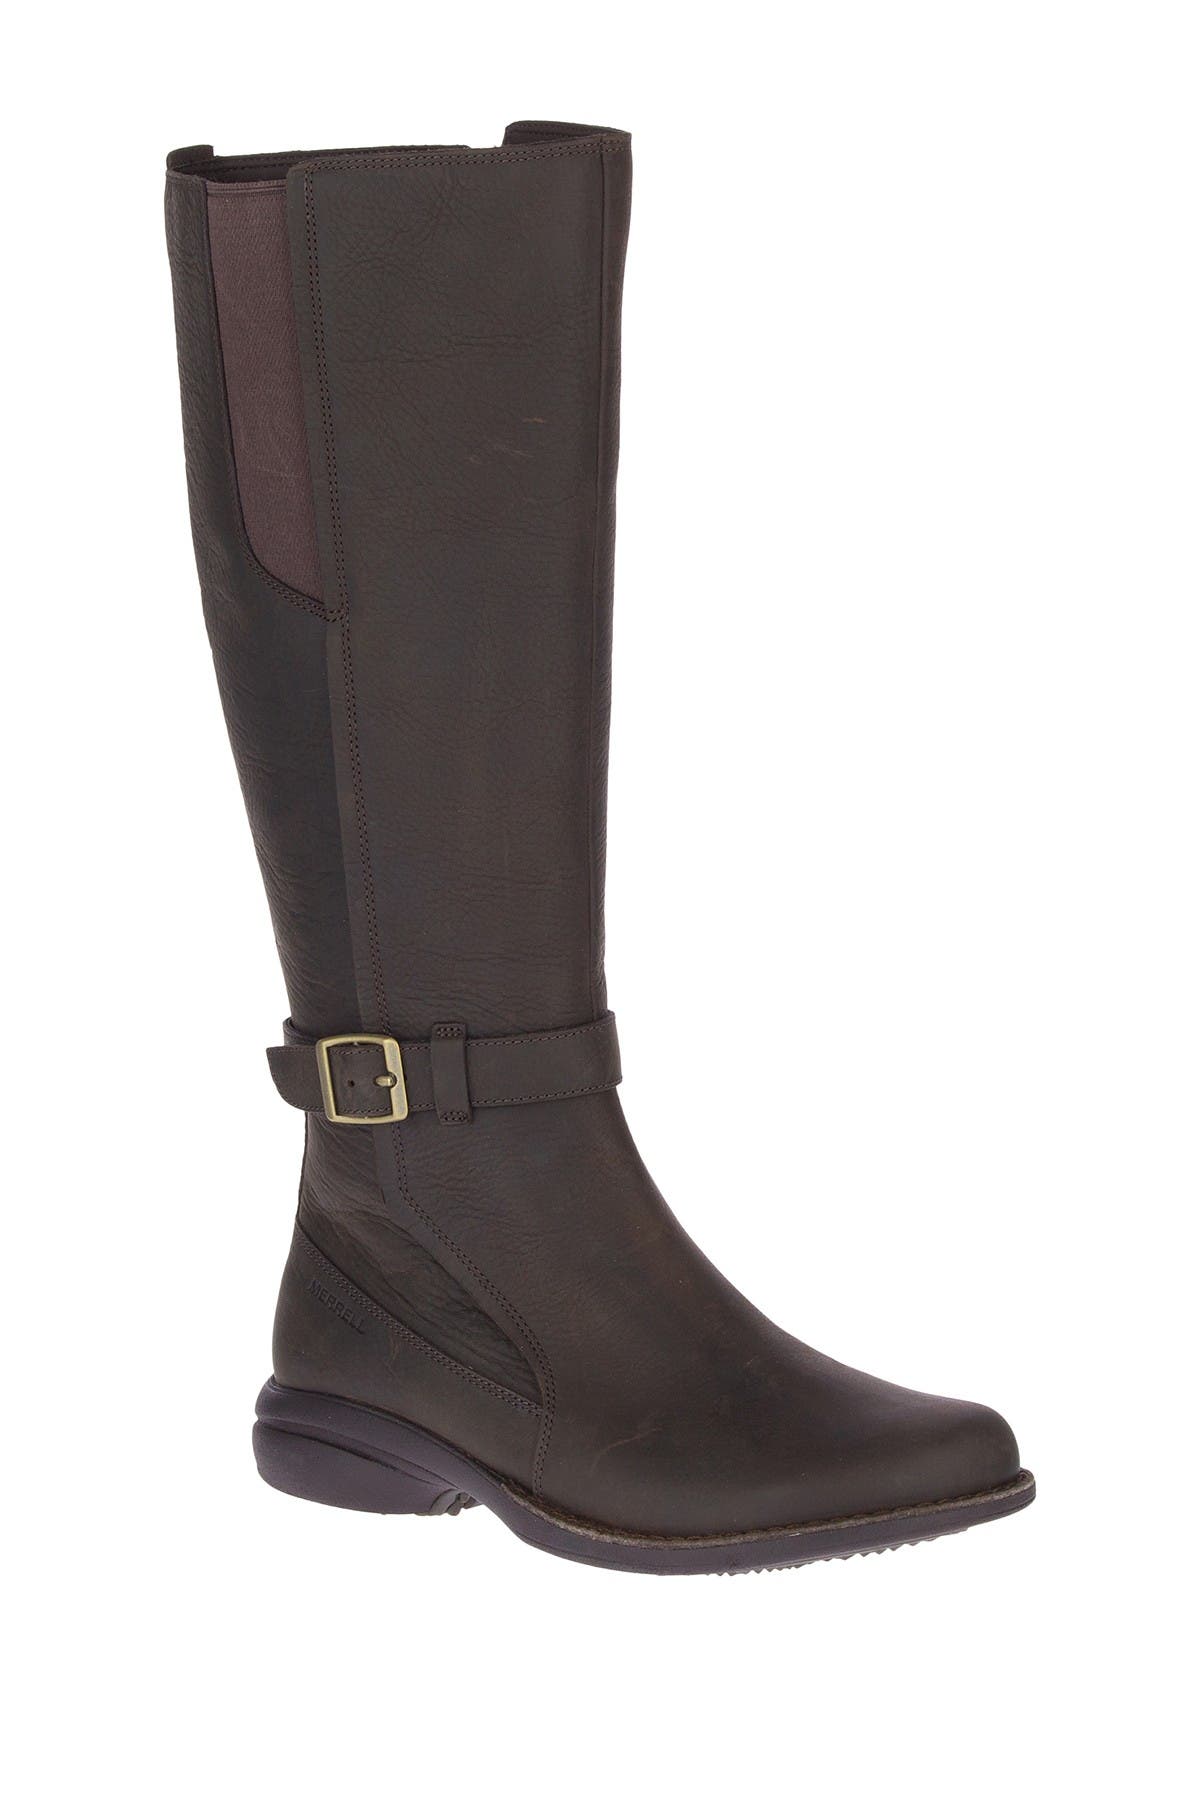 merrell tall black boots